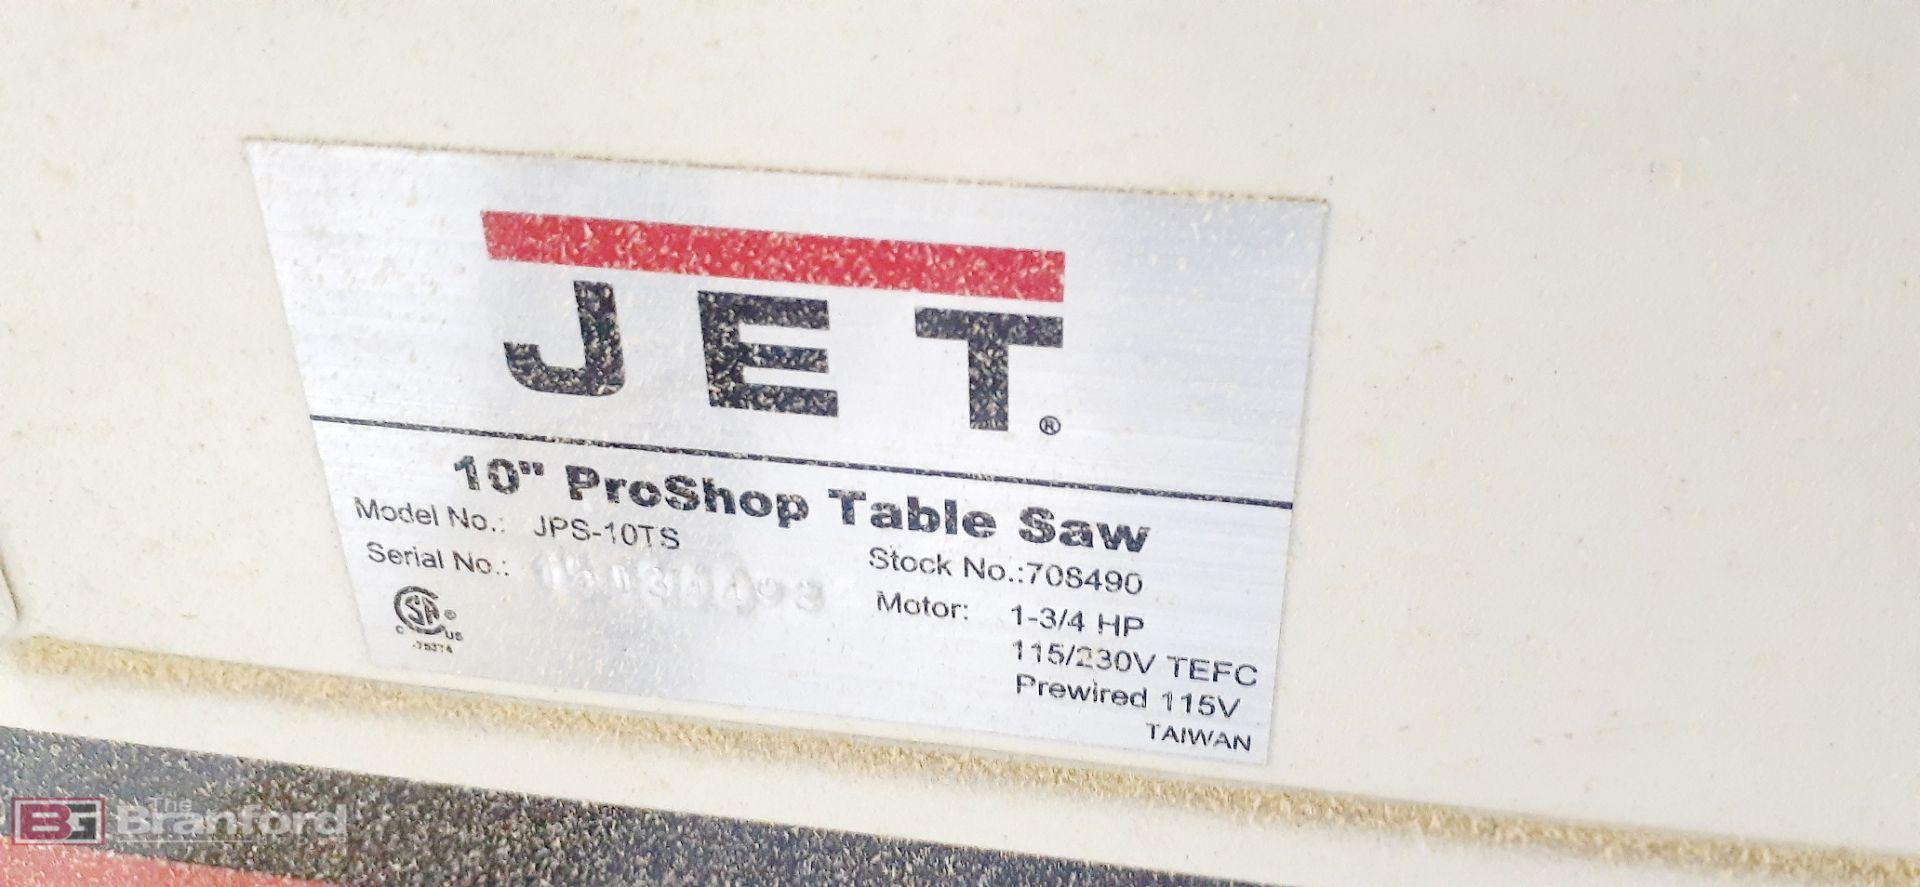 JET Model JPS-10TS, 10" ProShop Table Saw - Image 7 of 8